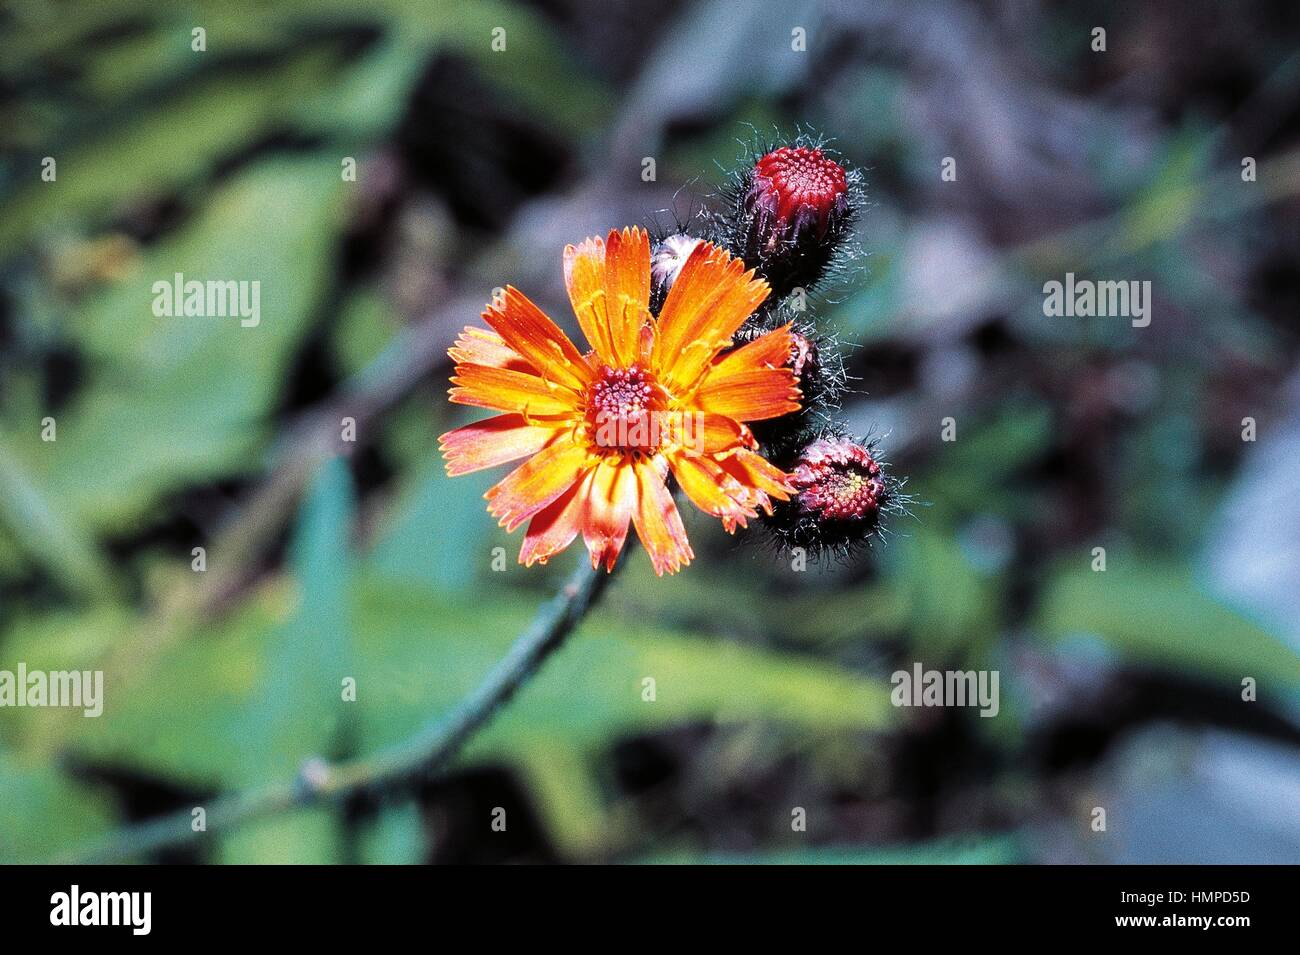 Fox-and-cubs or Orange Hawkweed (Hieracium aurantiacum or Pilosella aurantiaca), Asteraceae. Stock Photo